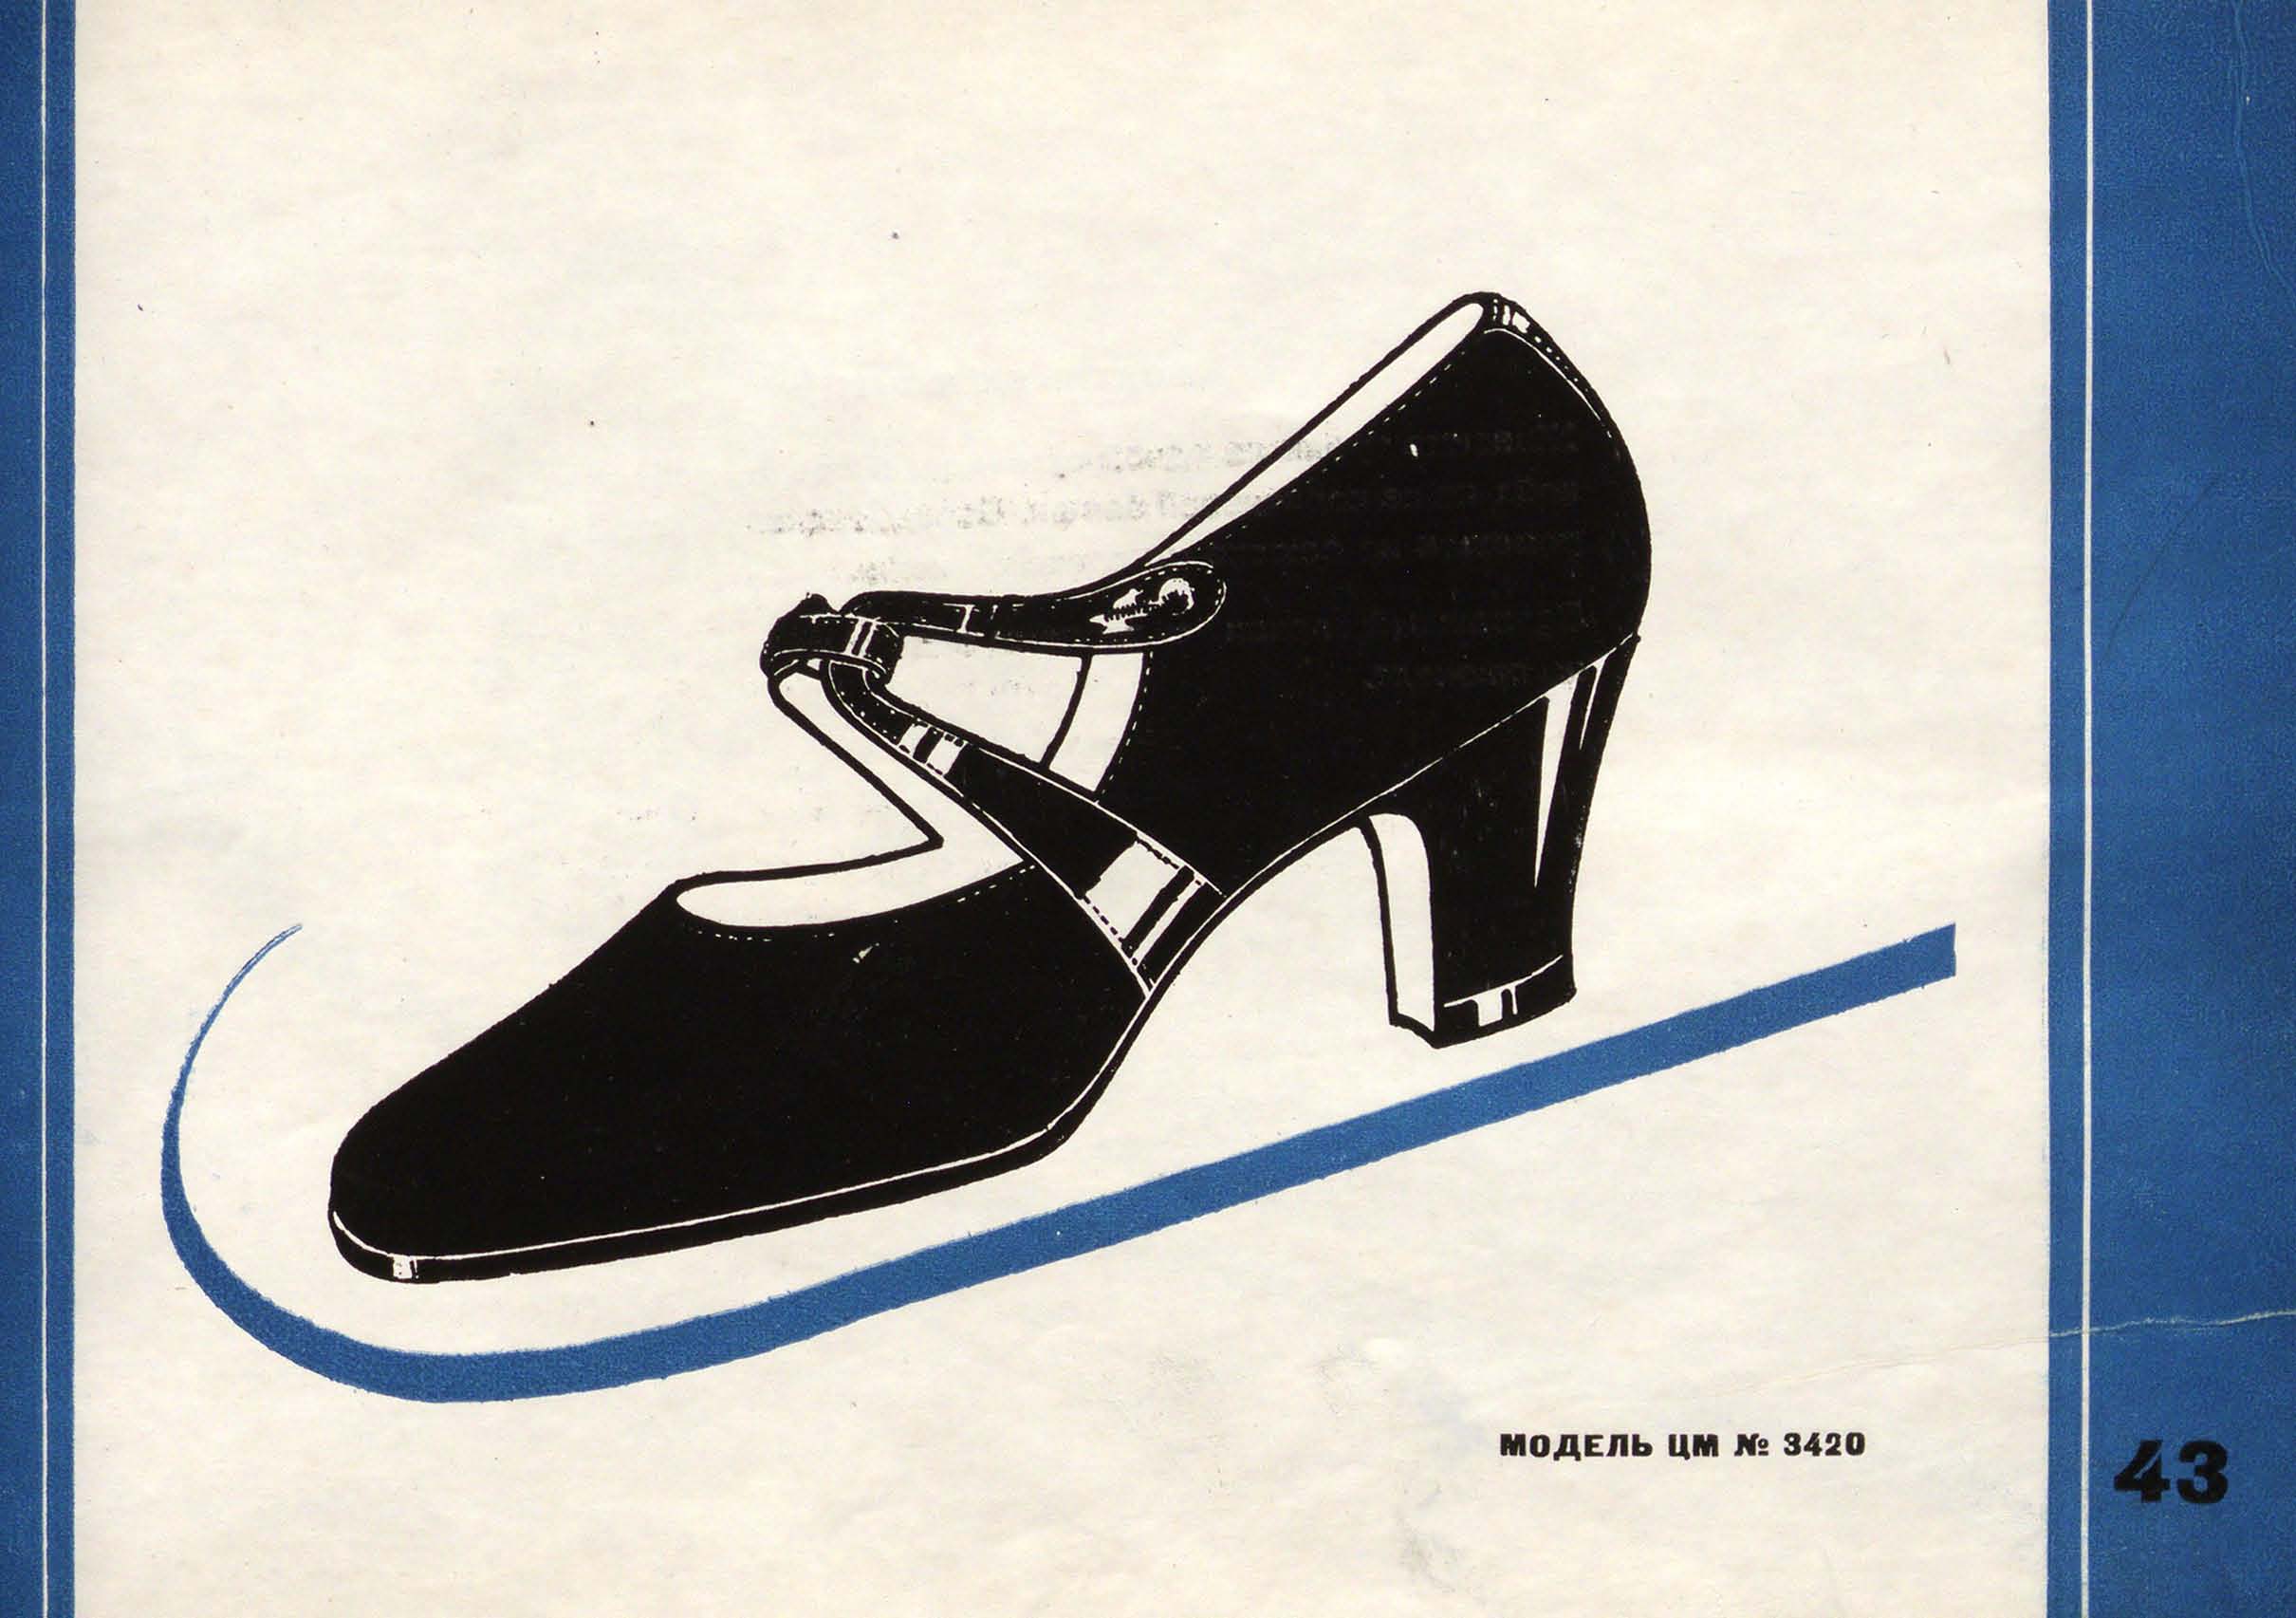 Фасоны и модели обуви Союзной обувной промышленности. 1936